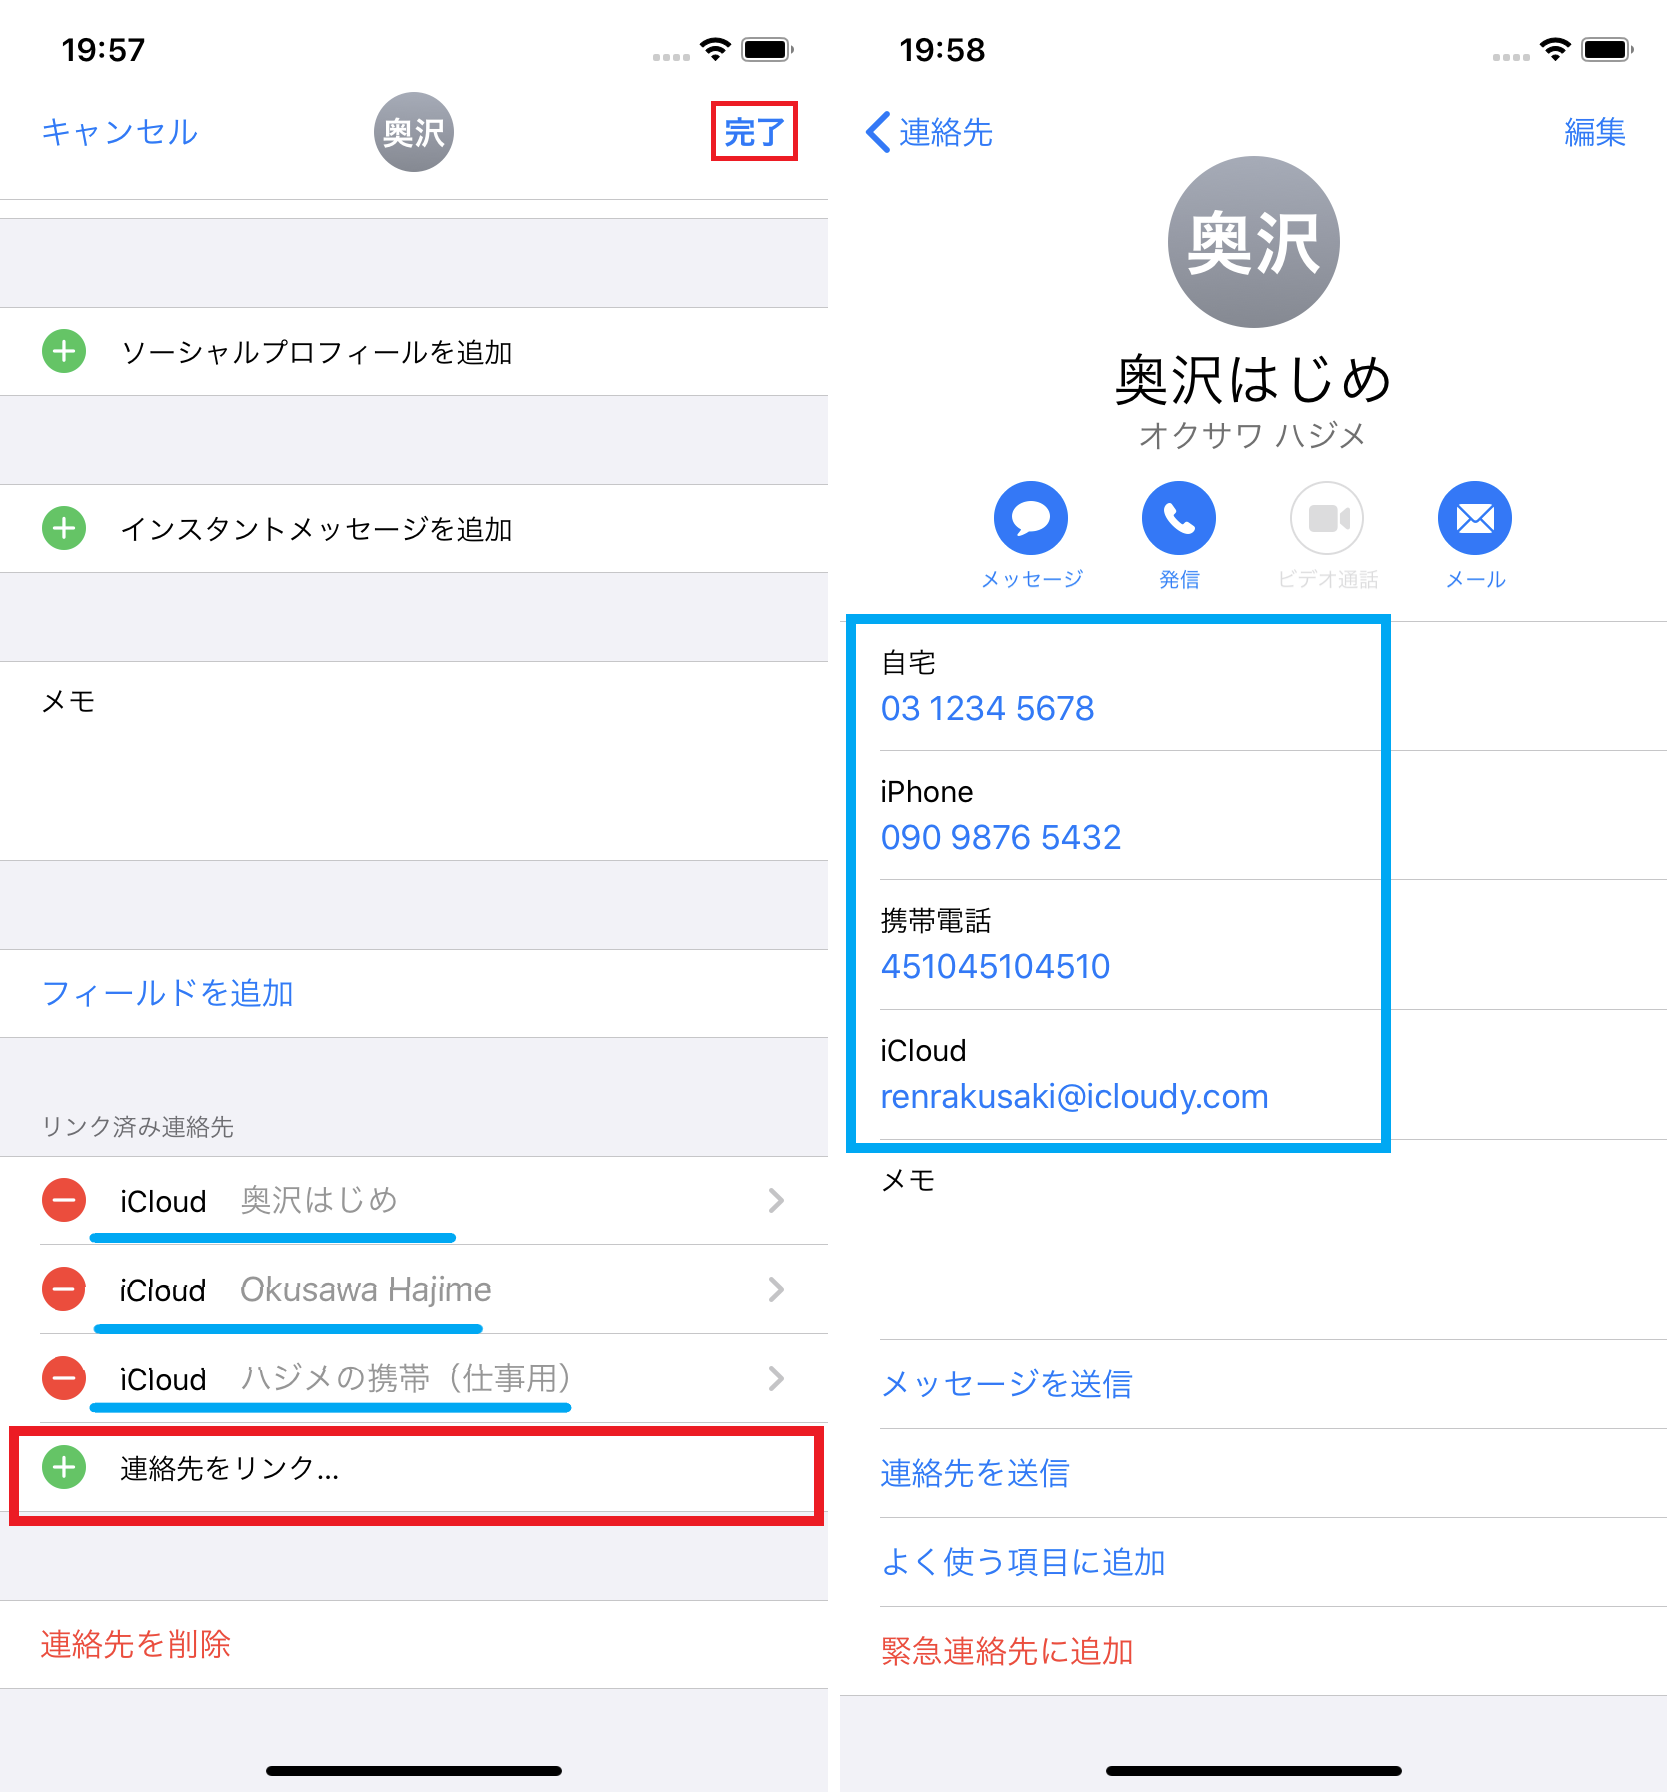 連絡先をリンク させてスッキリ整理整頓してみてはいかが Iphone Tips Engadget 日本版